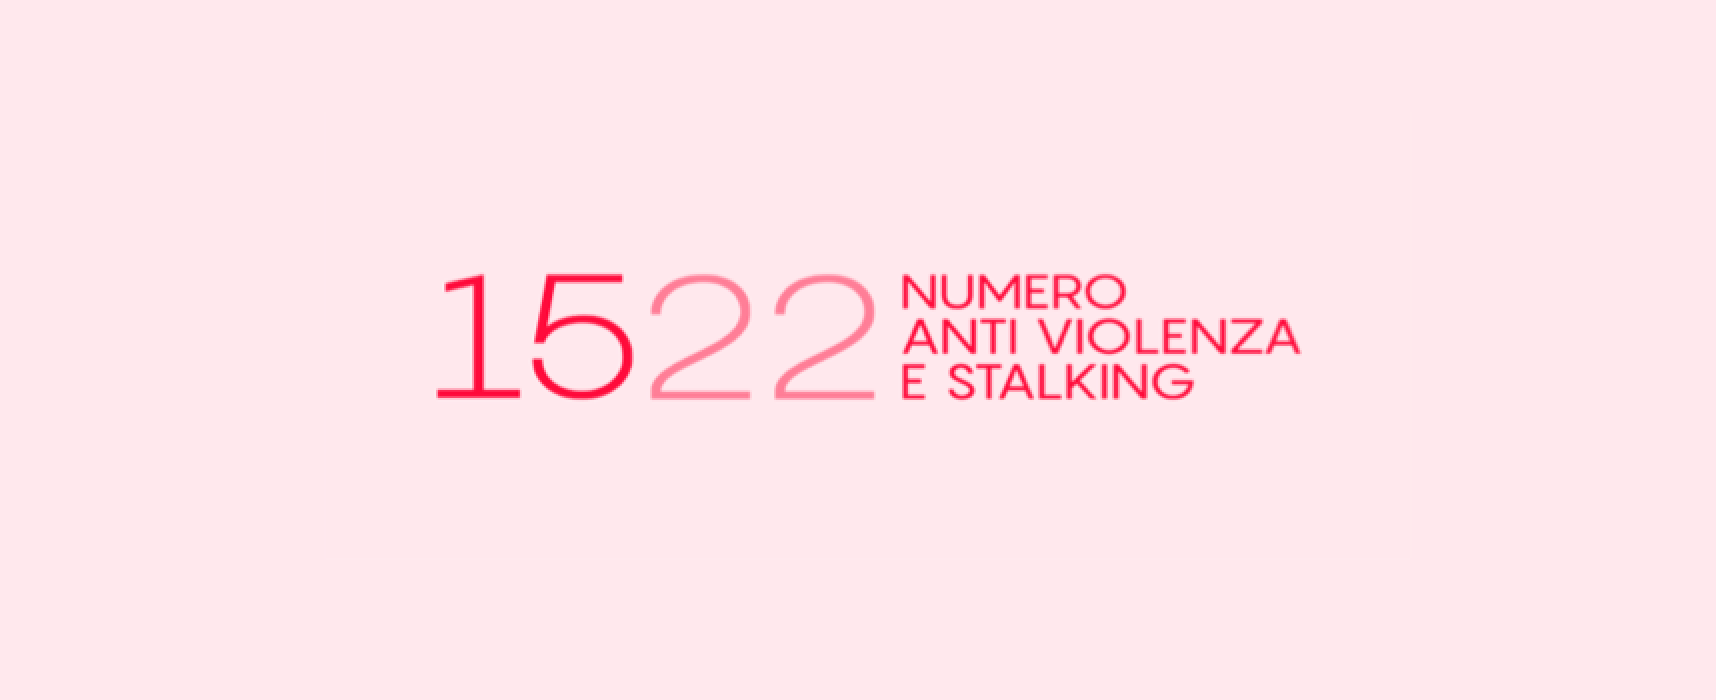 Giornata contro violenza sulle donne, Silvestris: “Vittime non devono sentirsi sole”